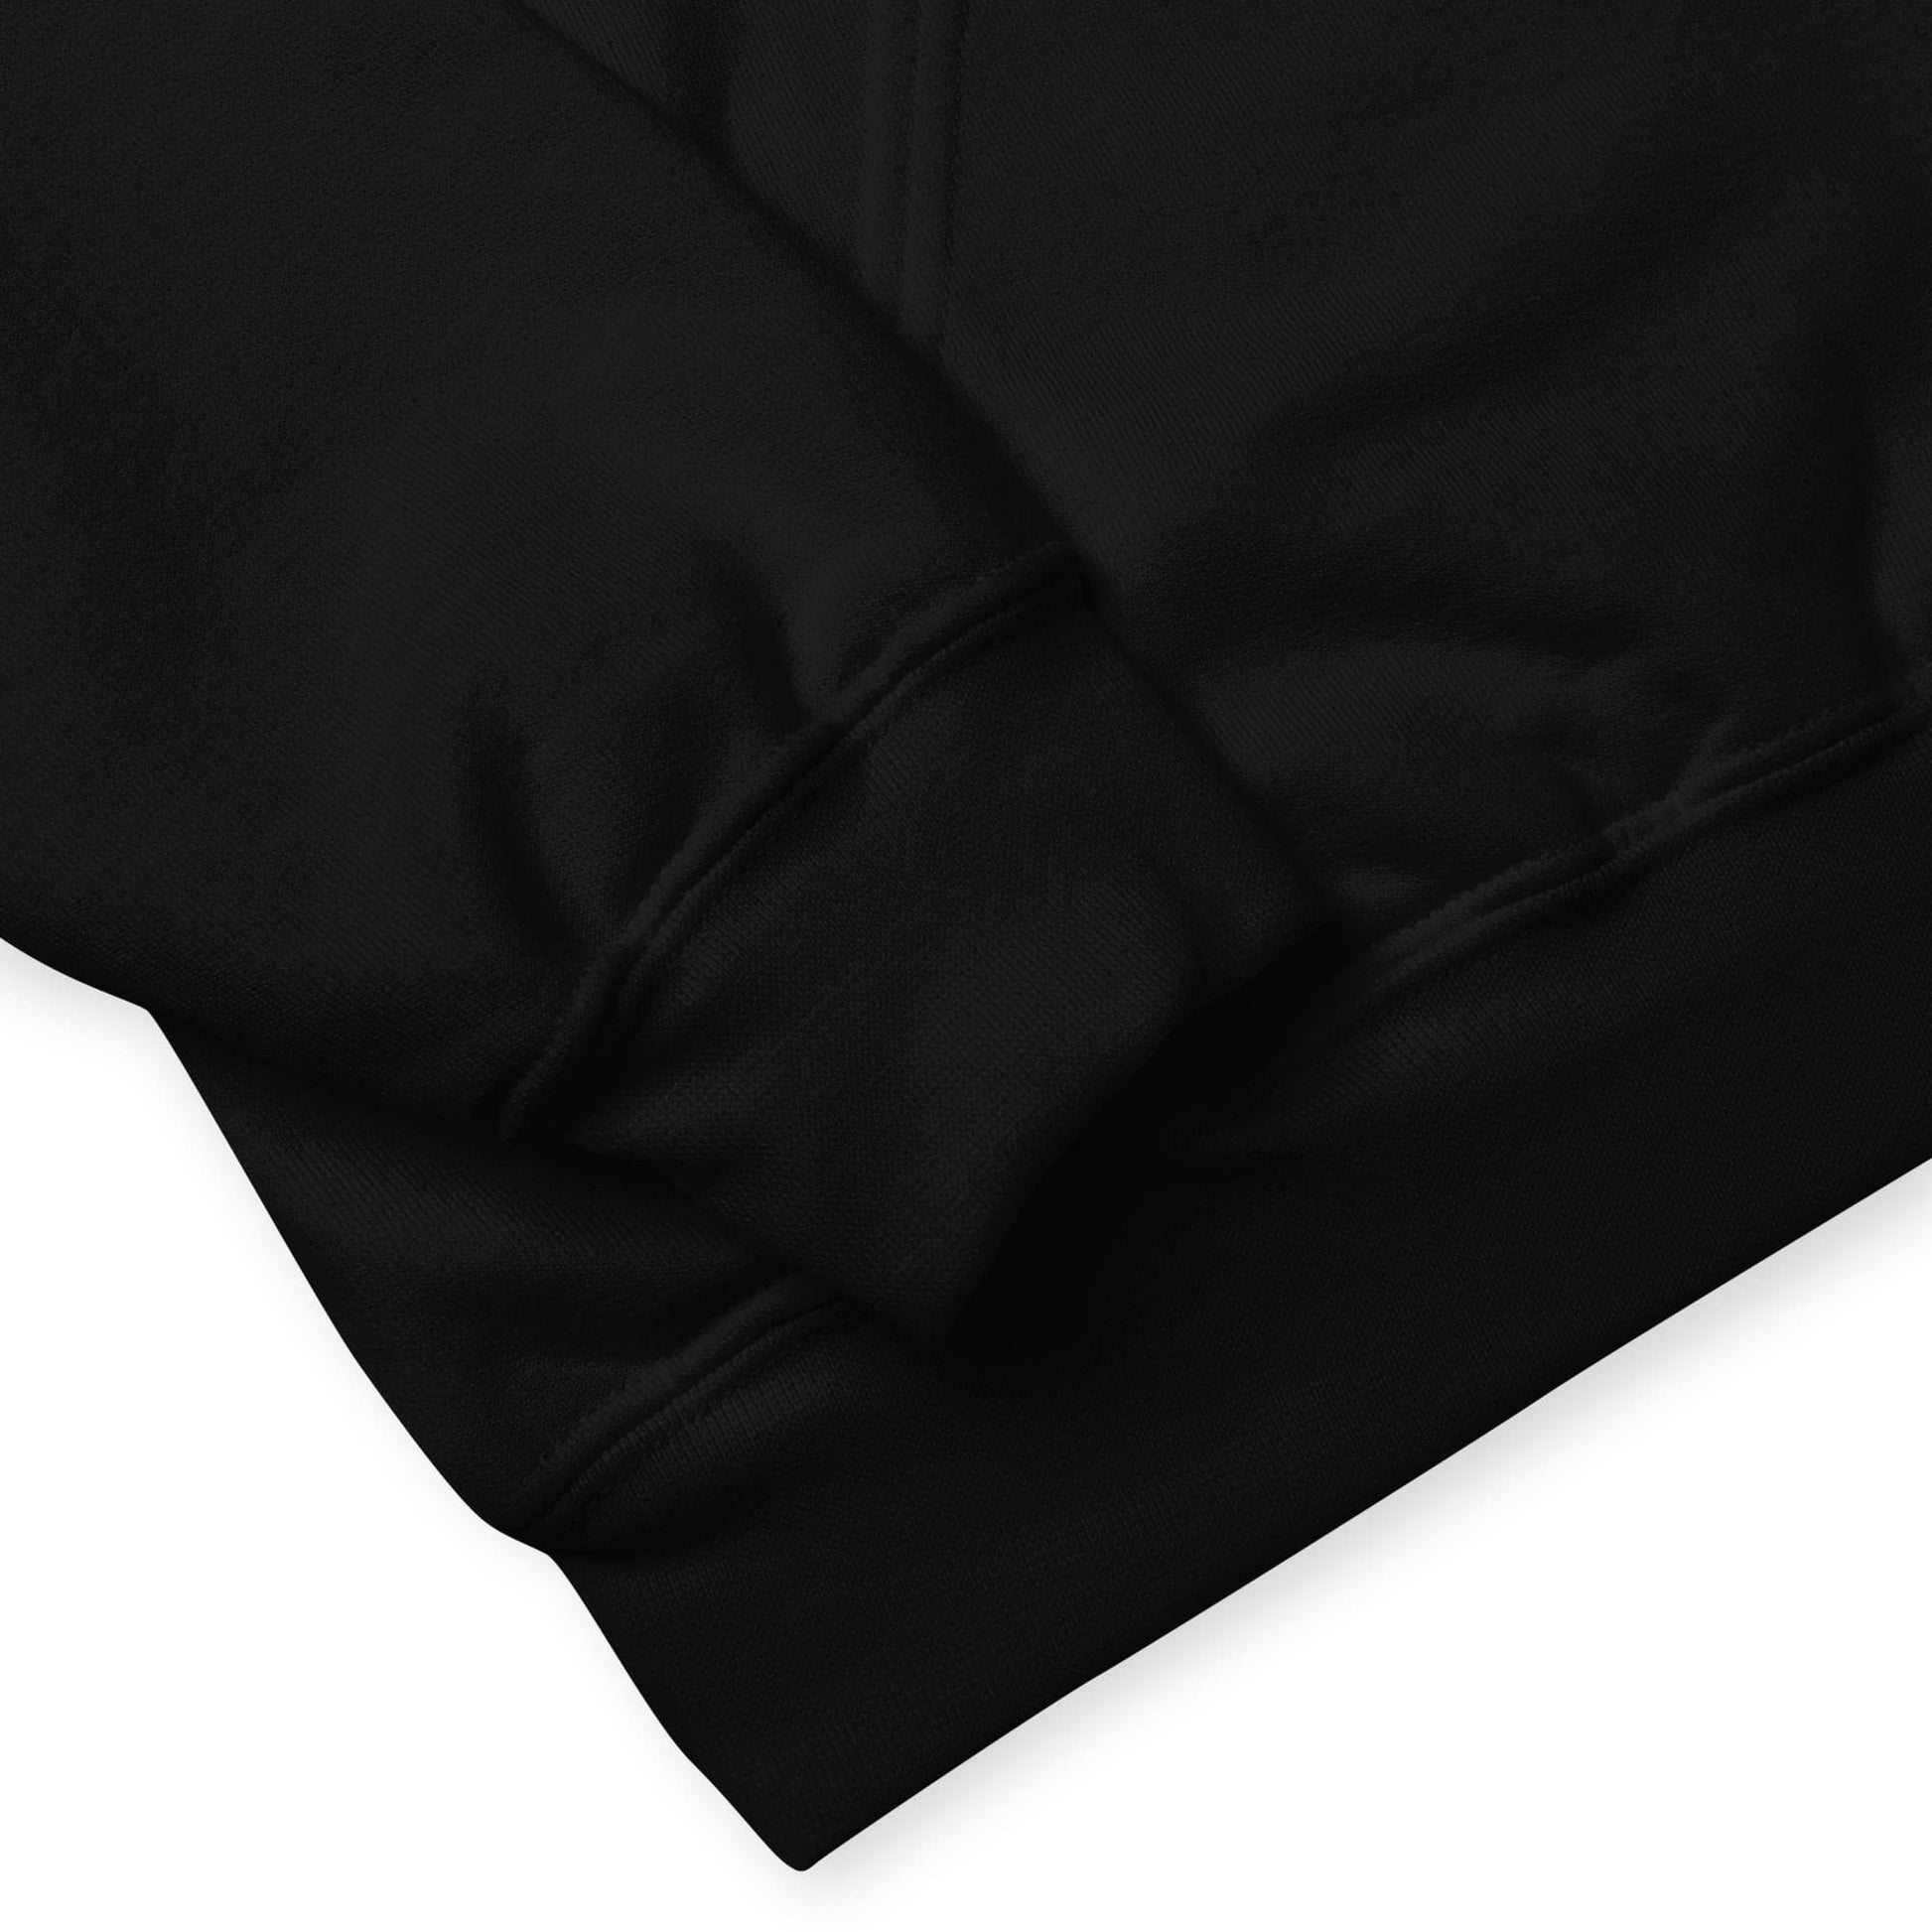 bisexual hoodie, subtle bi pride flag embroidered pocket design hooded sweatshirt, sleeve